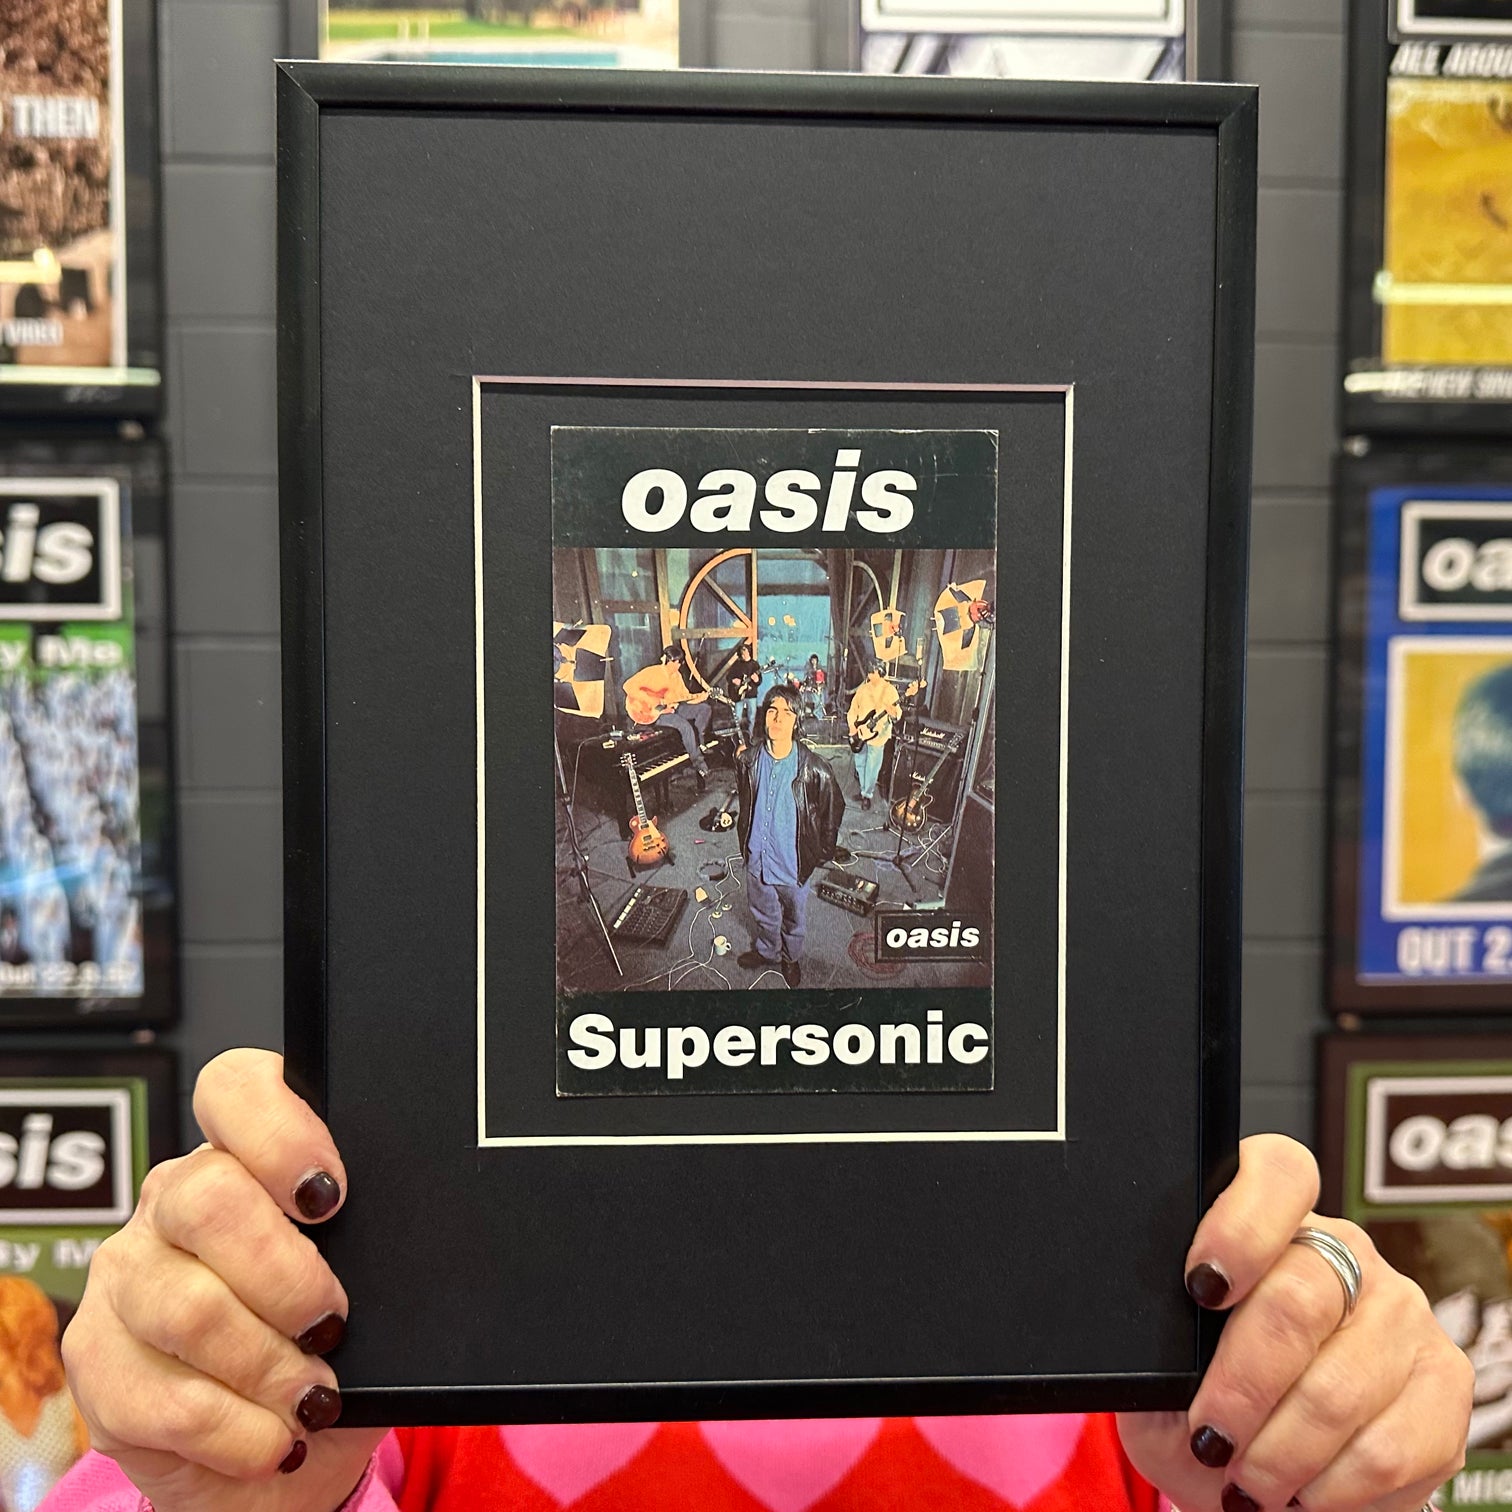 Oasis - Original 1994 'Supersonic' Framed Promo Postcard - New Item